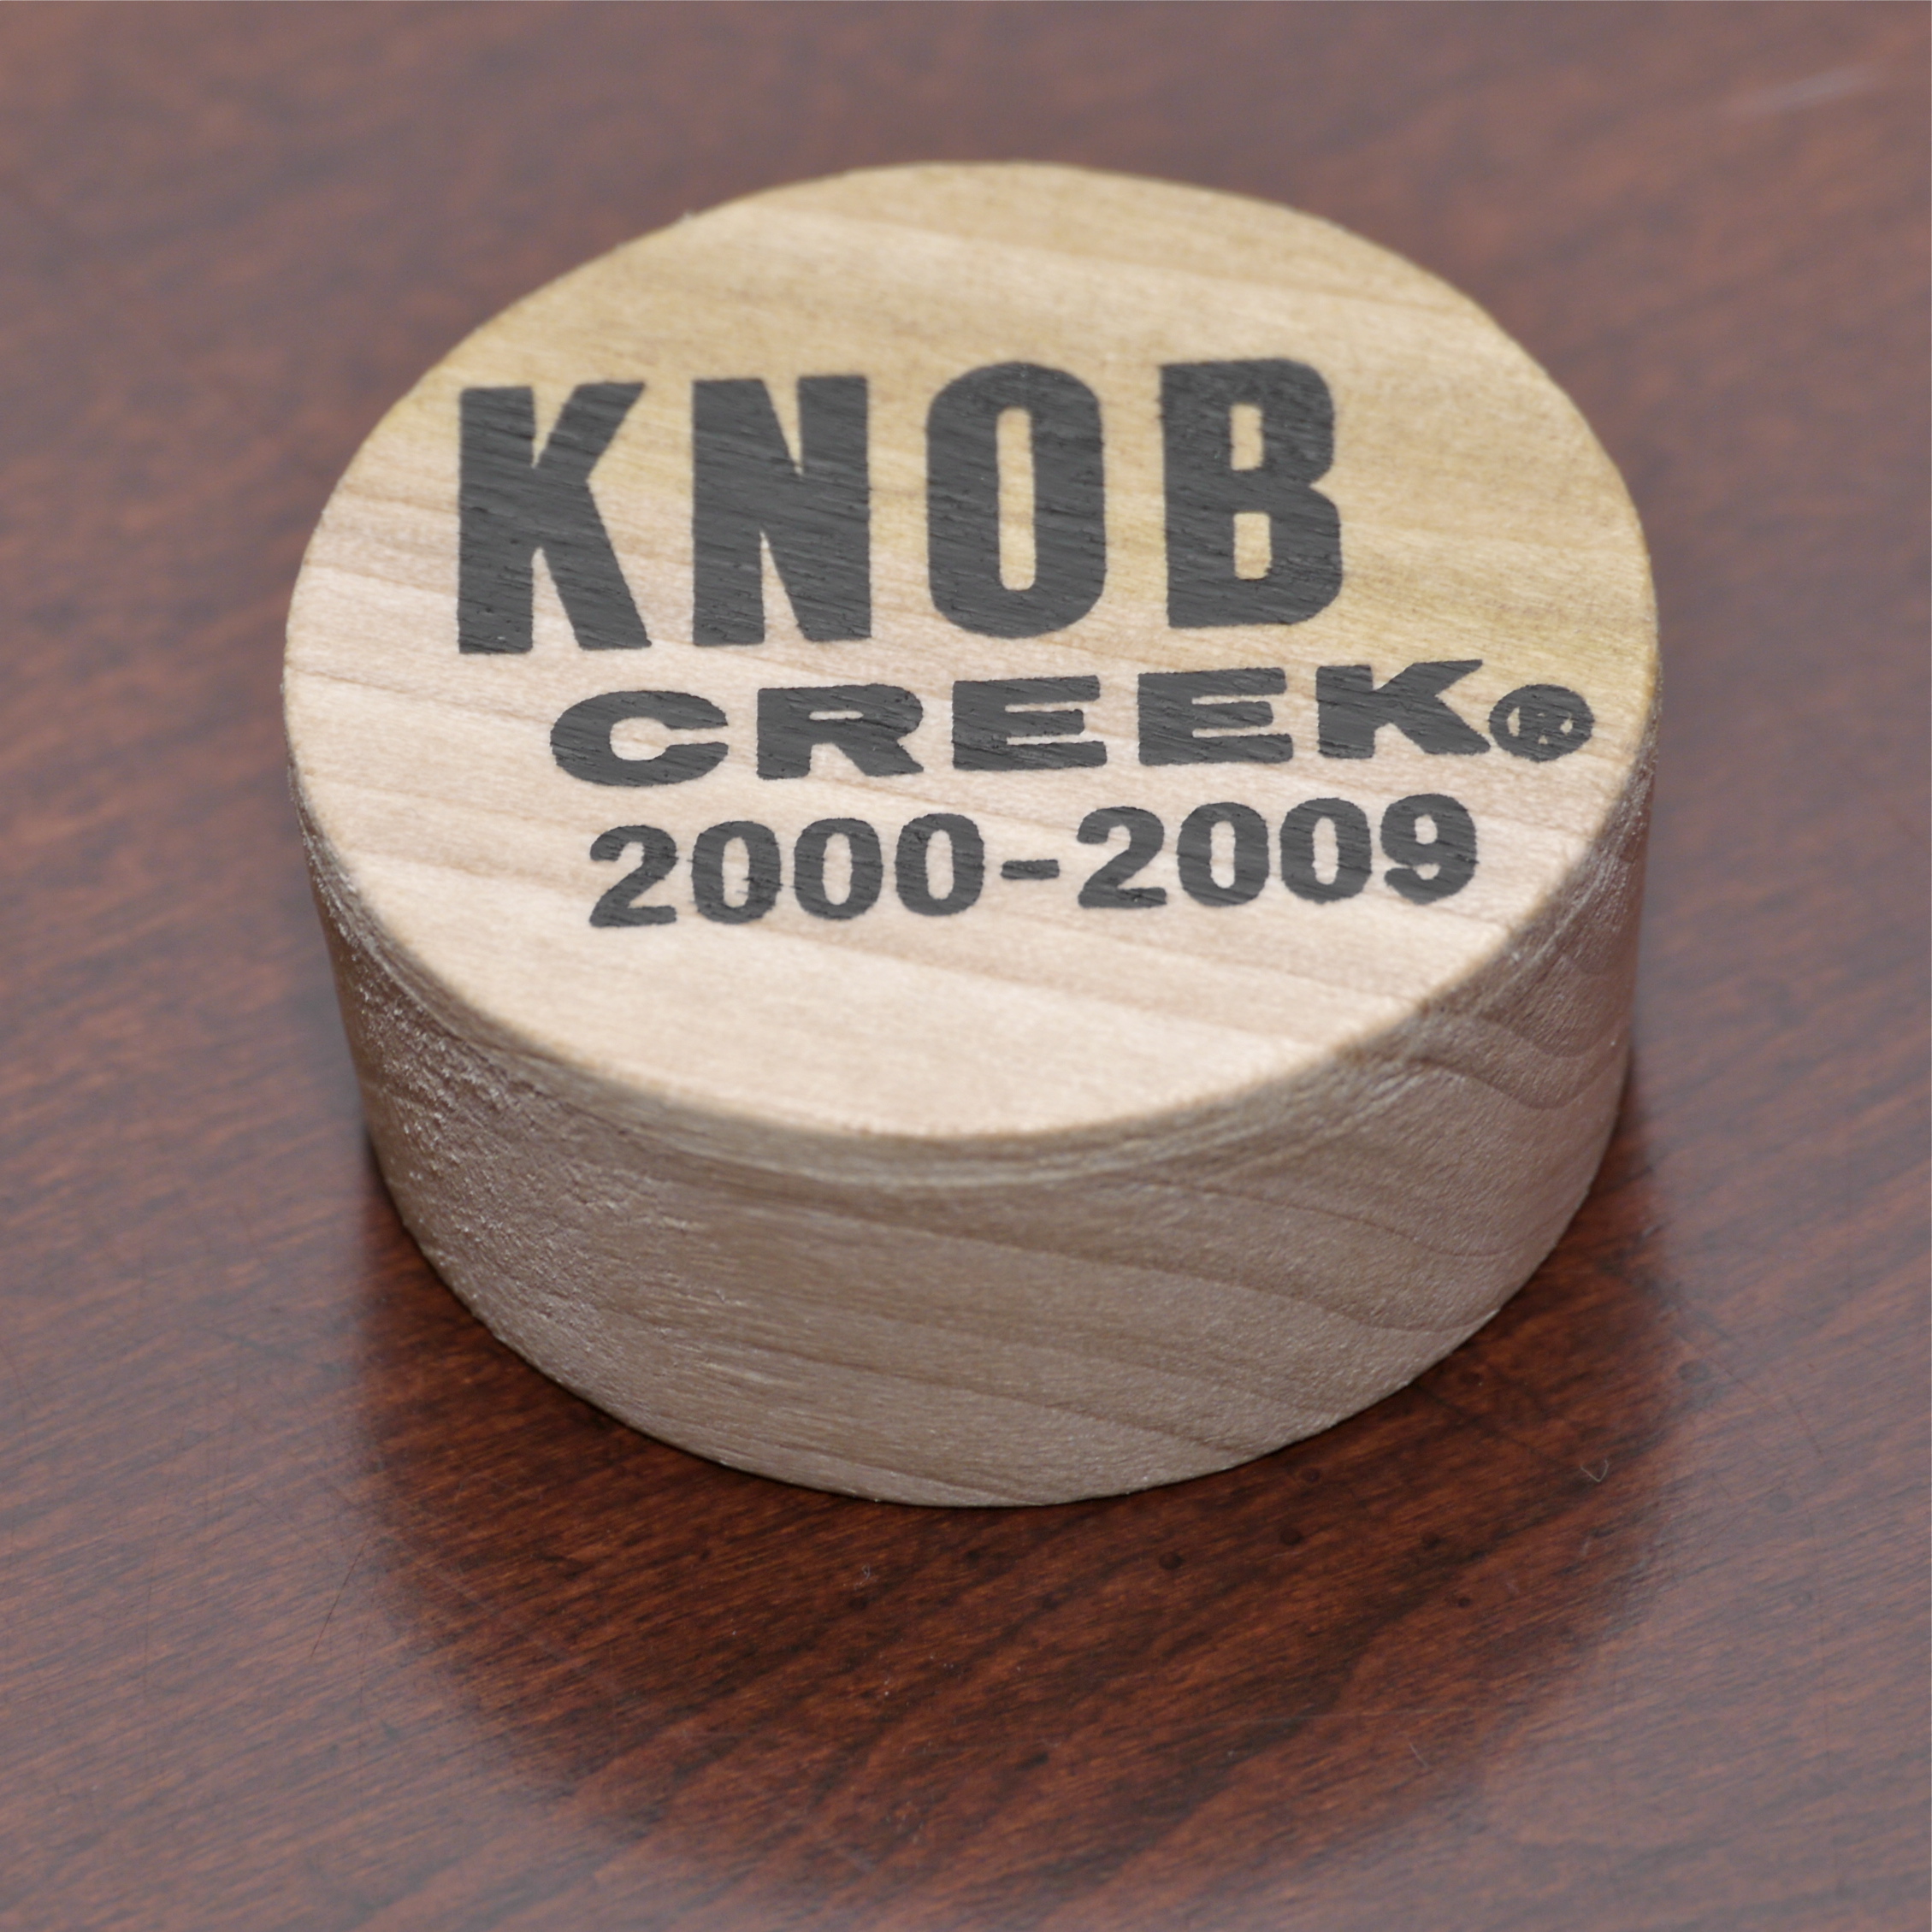 Knob Creek commemorative barrel bung | Scotch Hobbyist's Blog